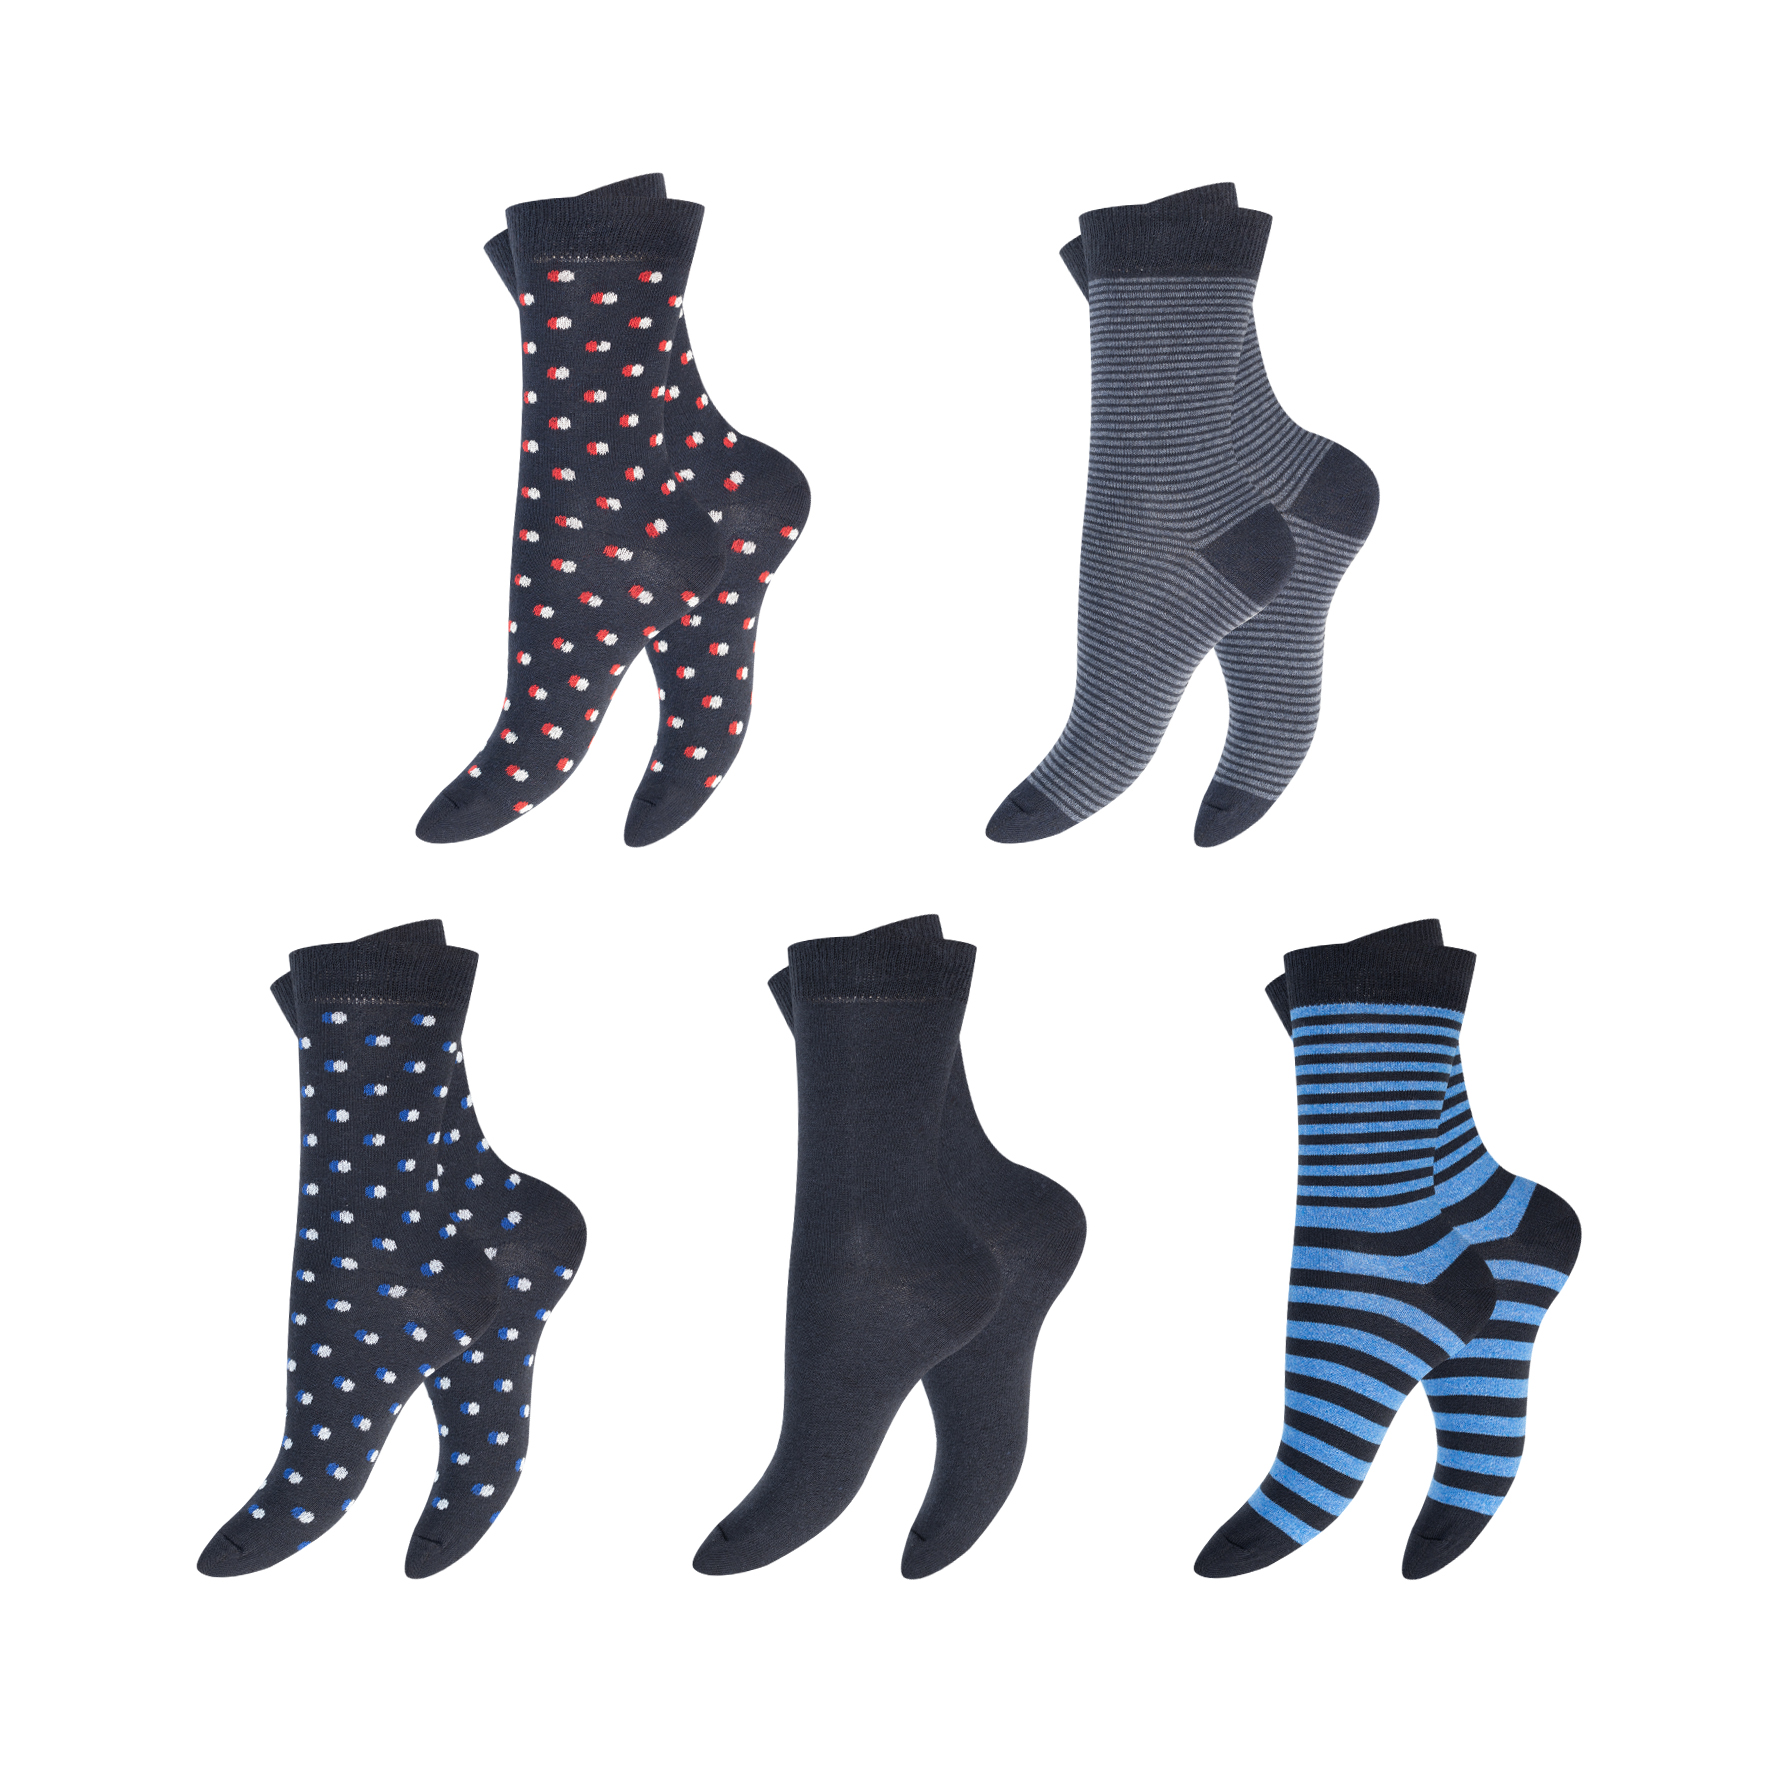 Damen Socken 5er-Pack BW/EL versch. Designs